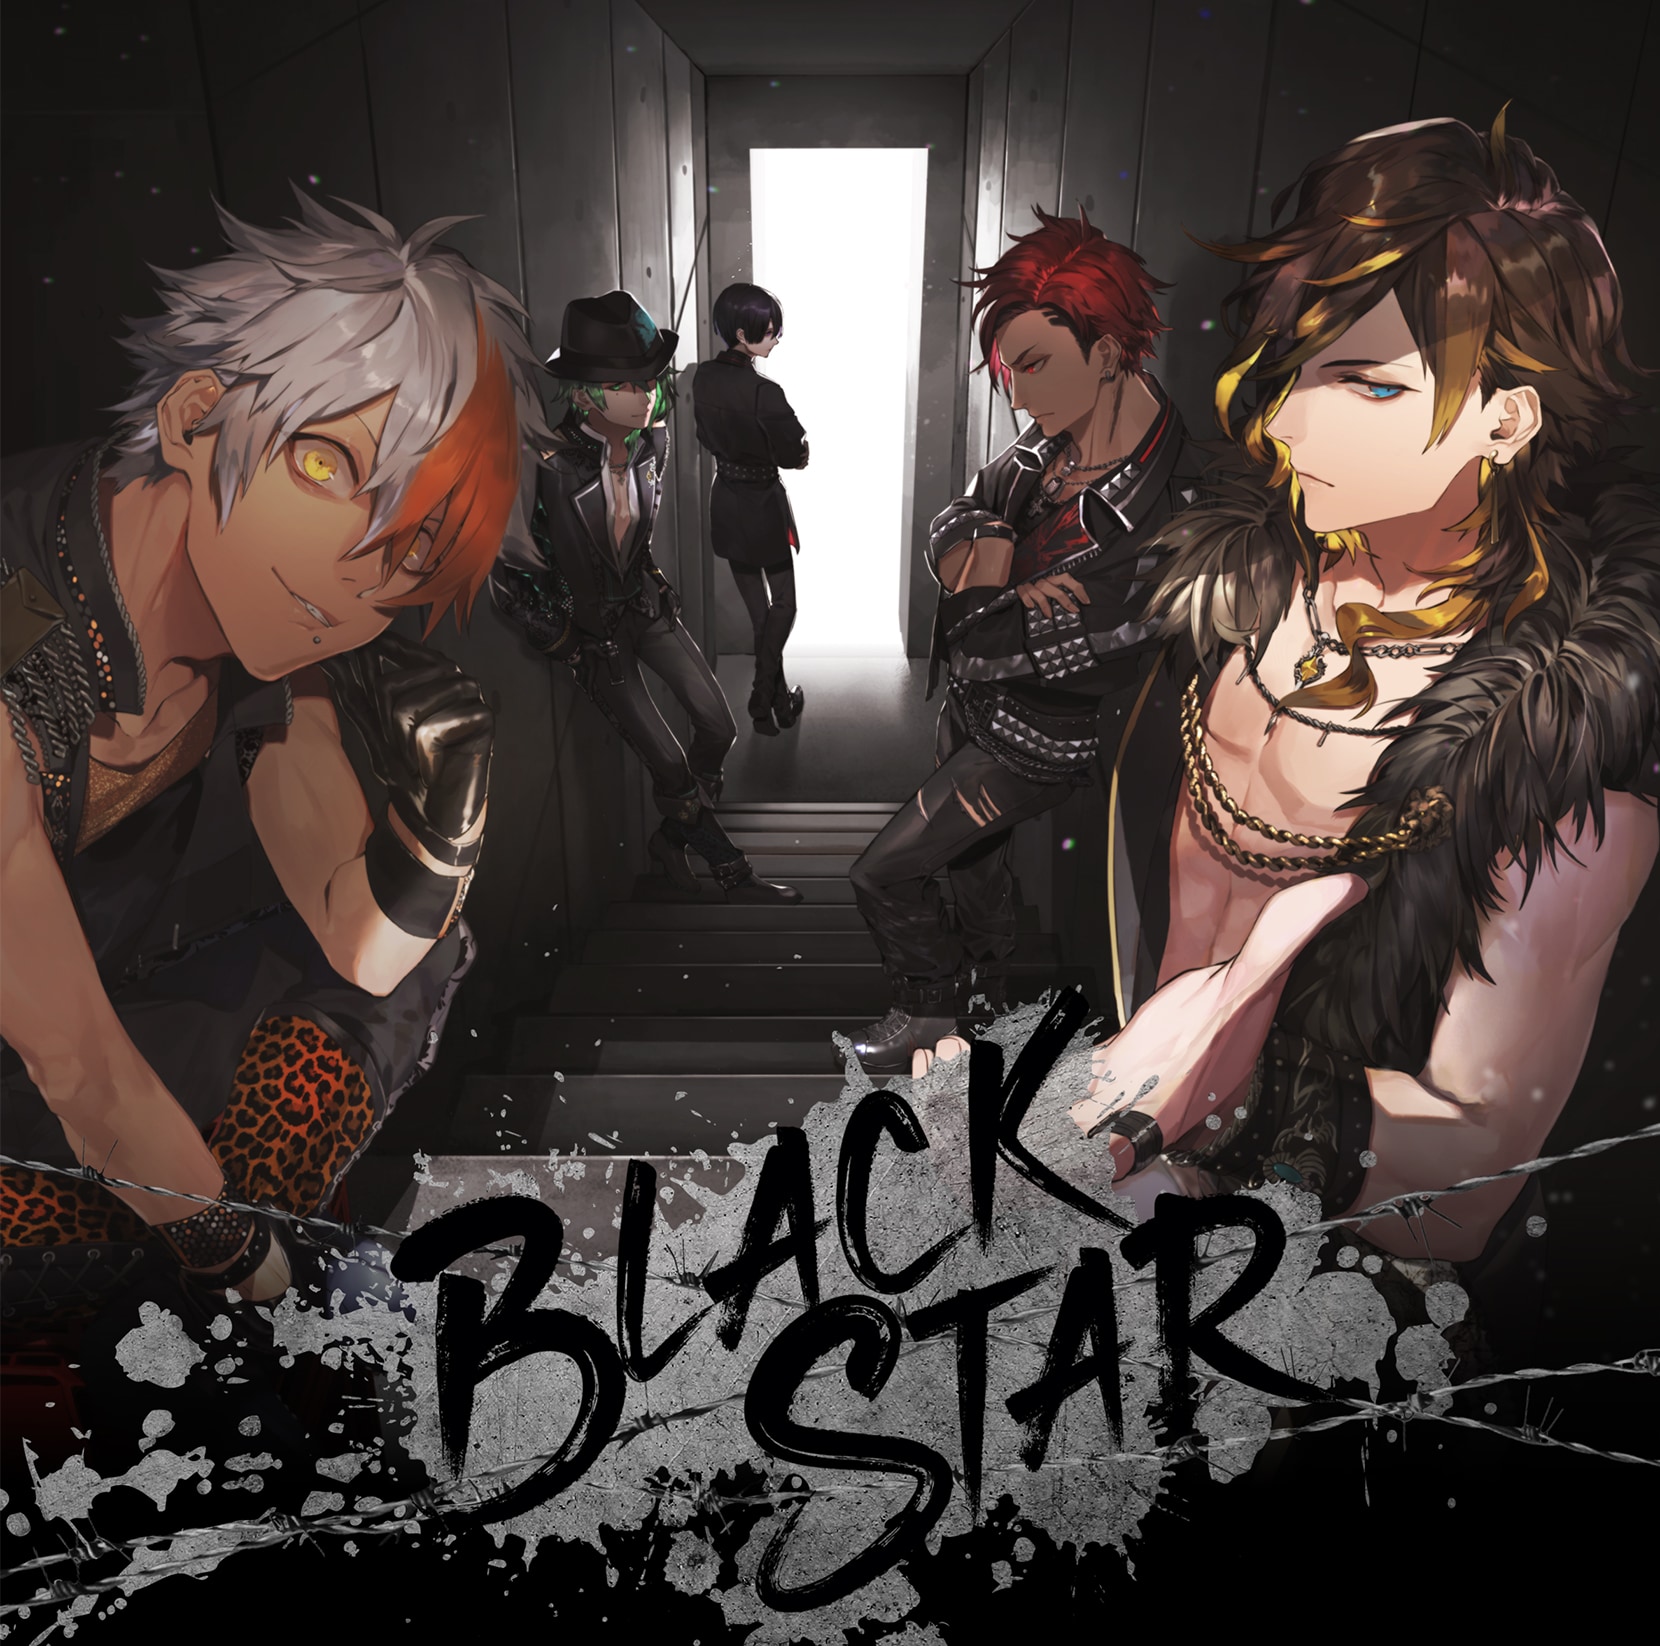 ブラスタ』1stアルバム「BLACKSTAR」発売決定！初回限定版はチーム別にパッケージを展開 (2020年7月8日) - エキサイトニュース(5/6)